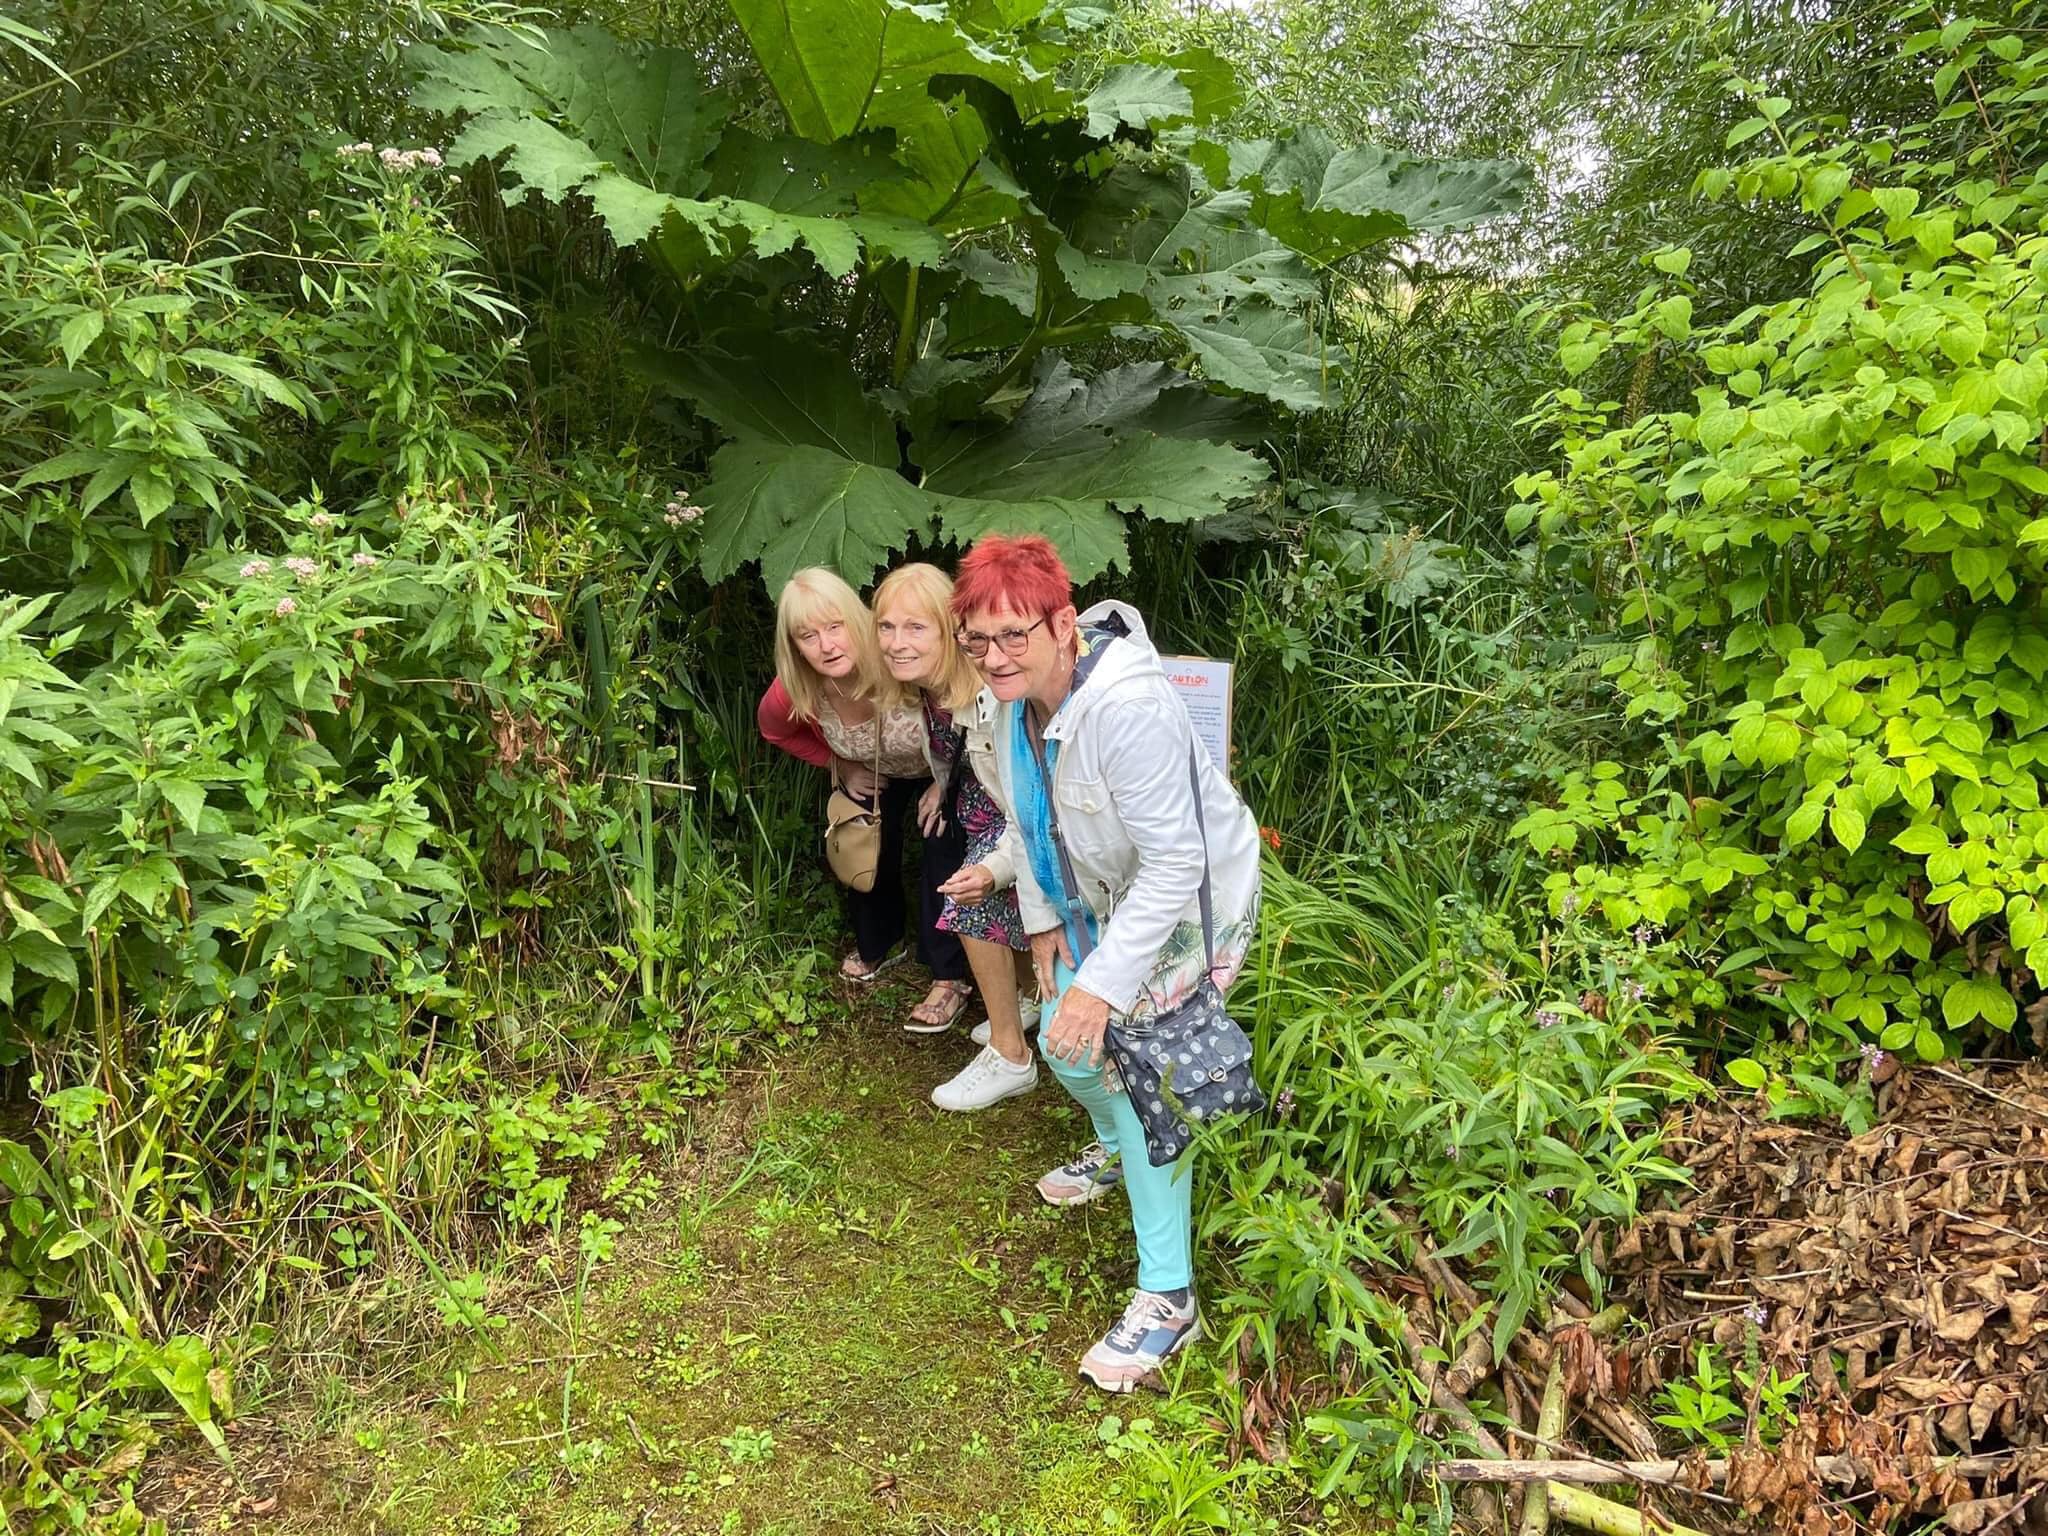 Intrepid explorers in a NGS garden in Barbridge